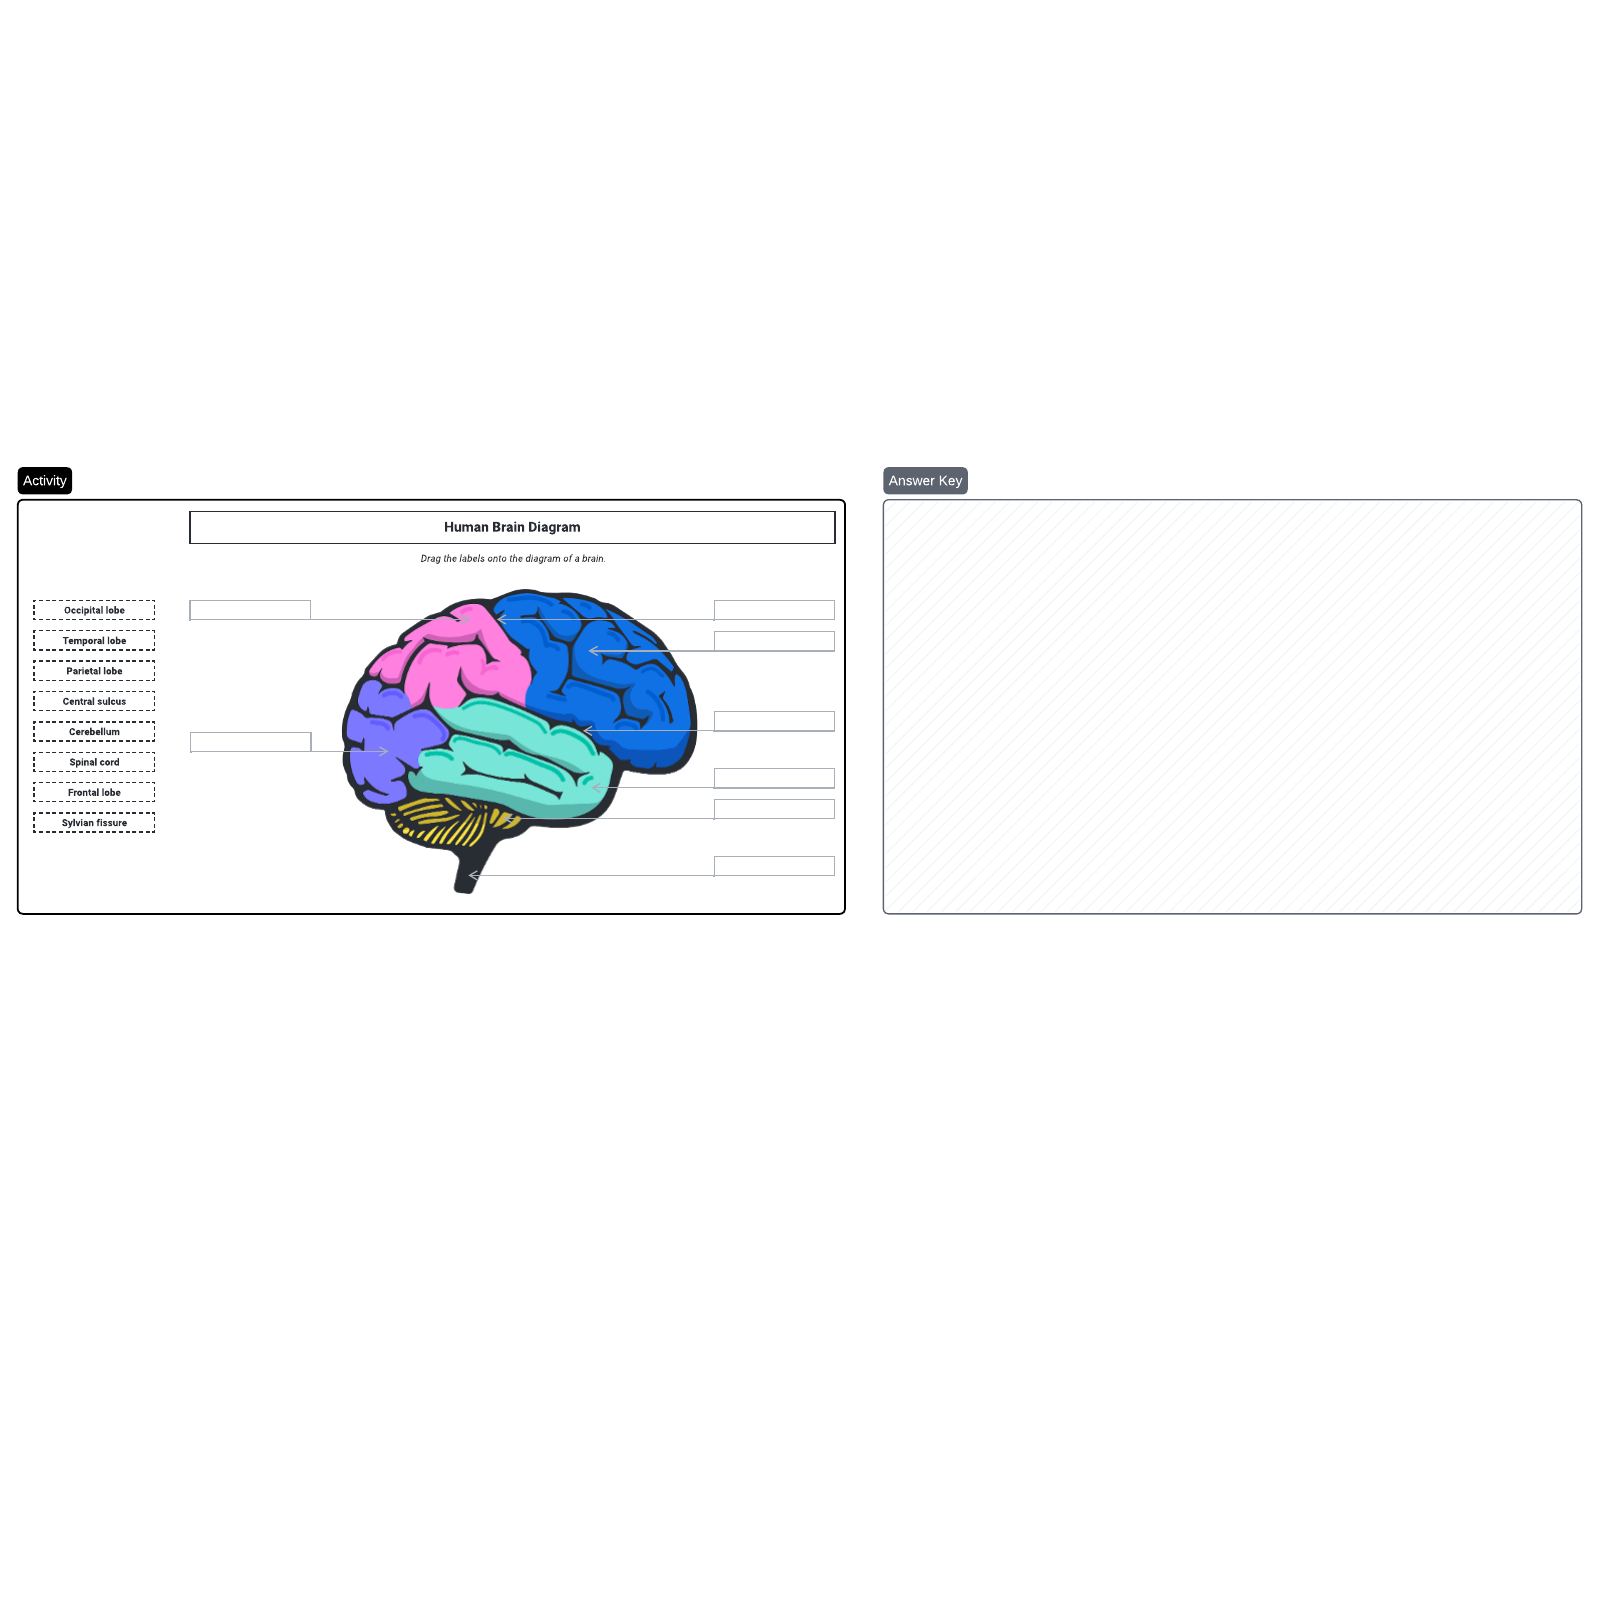 Human brain diagram example